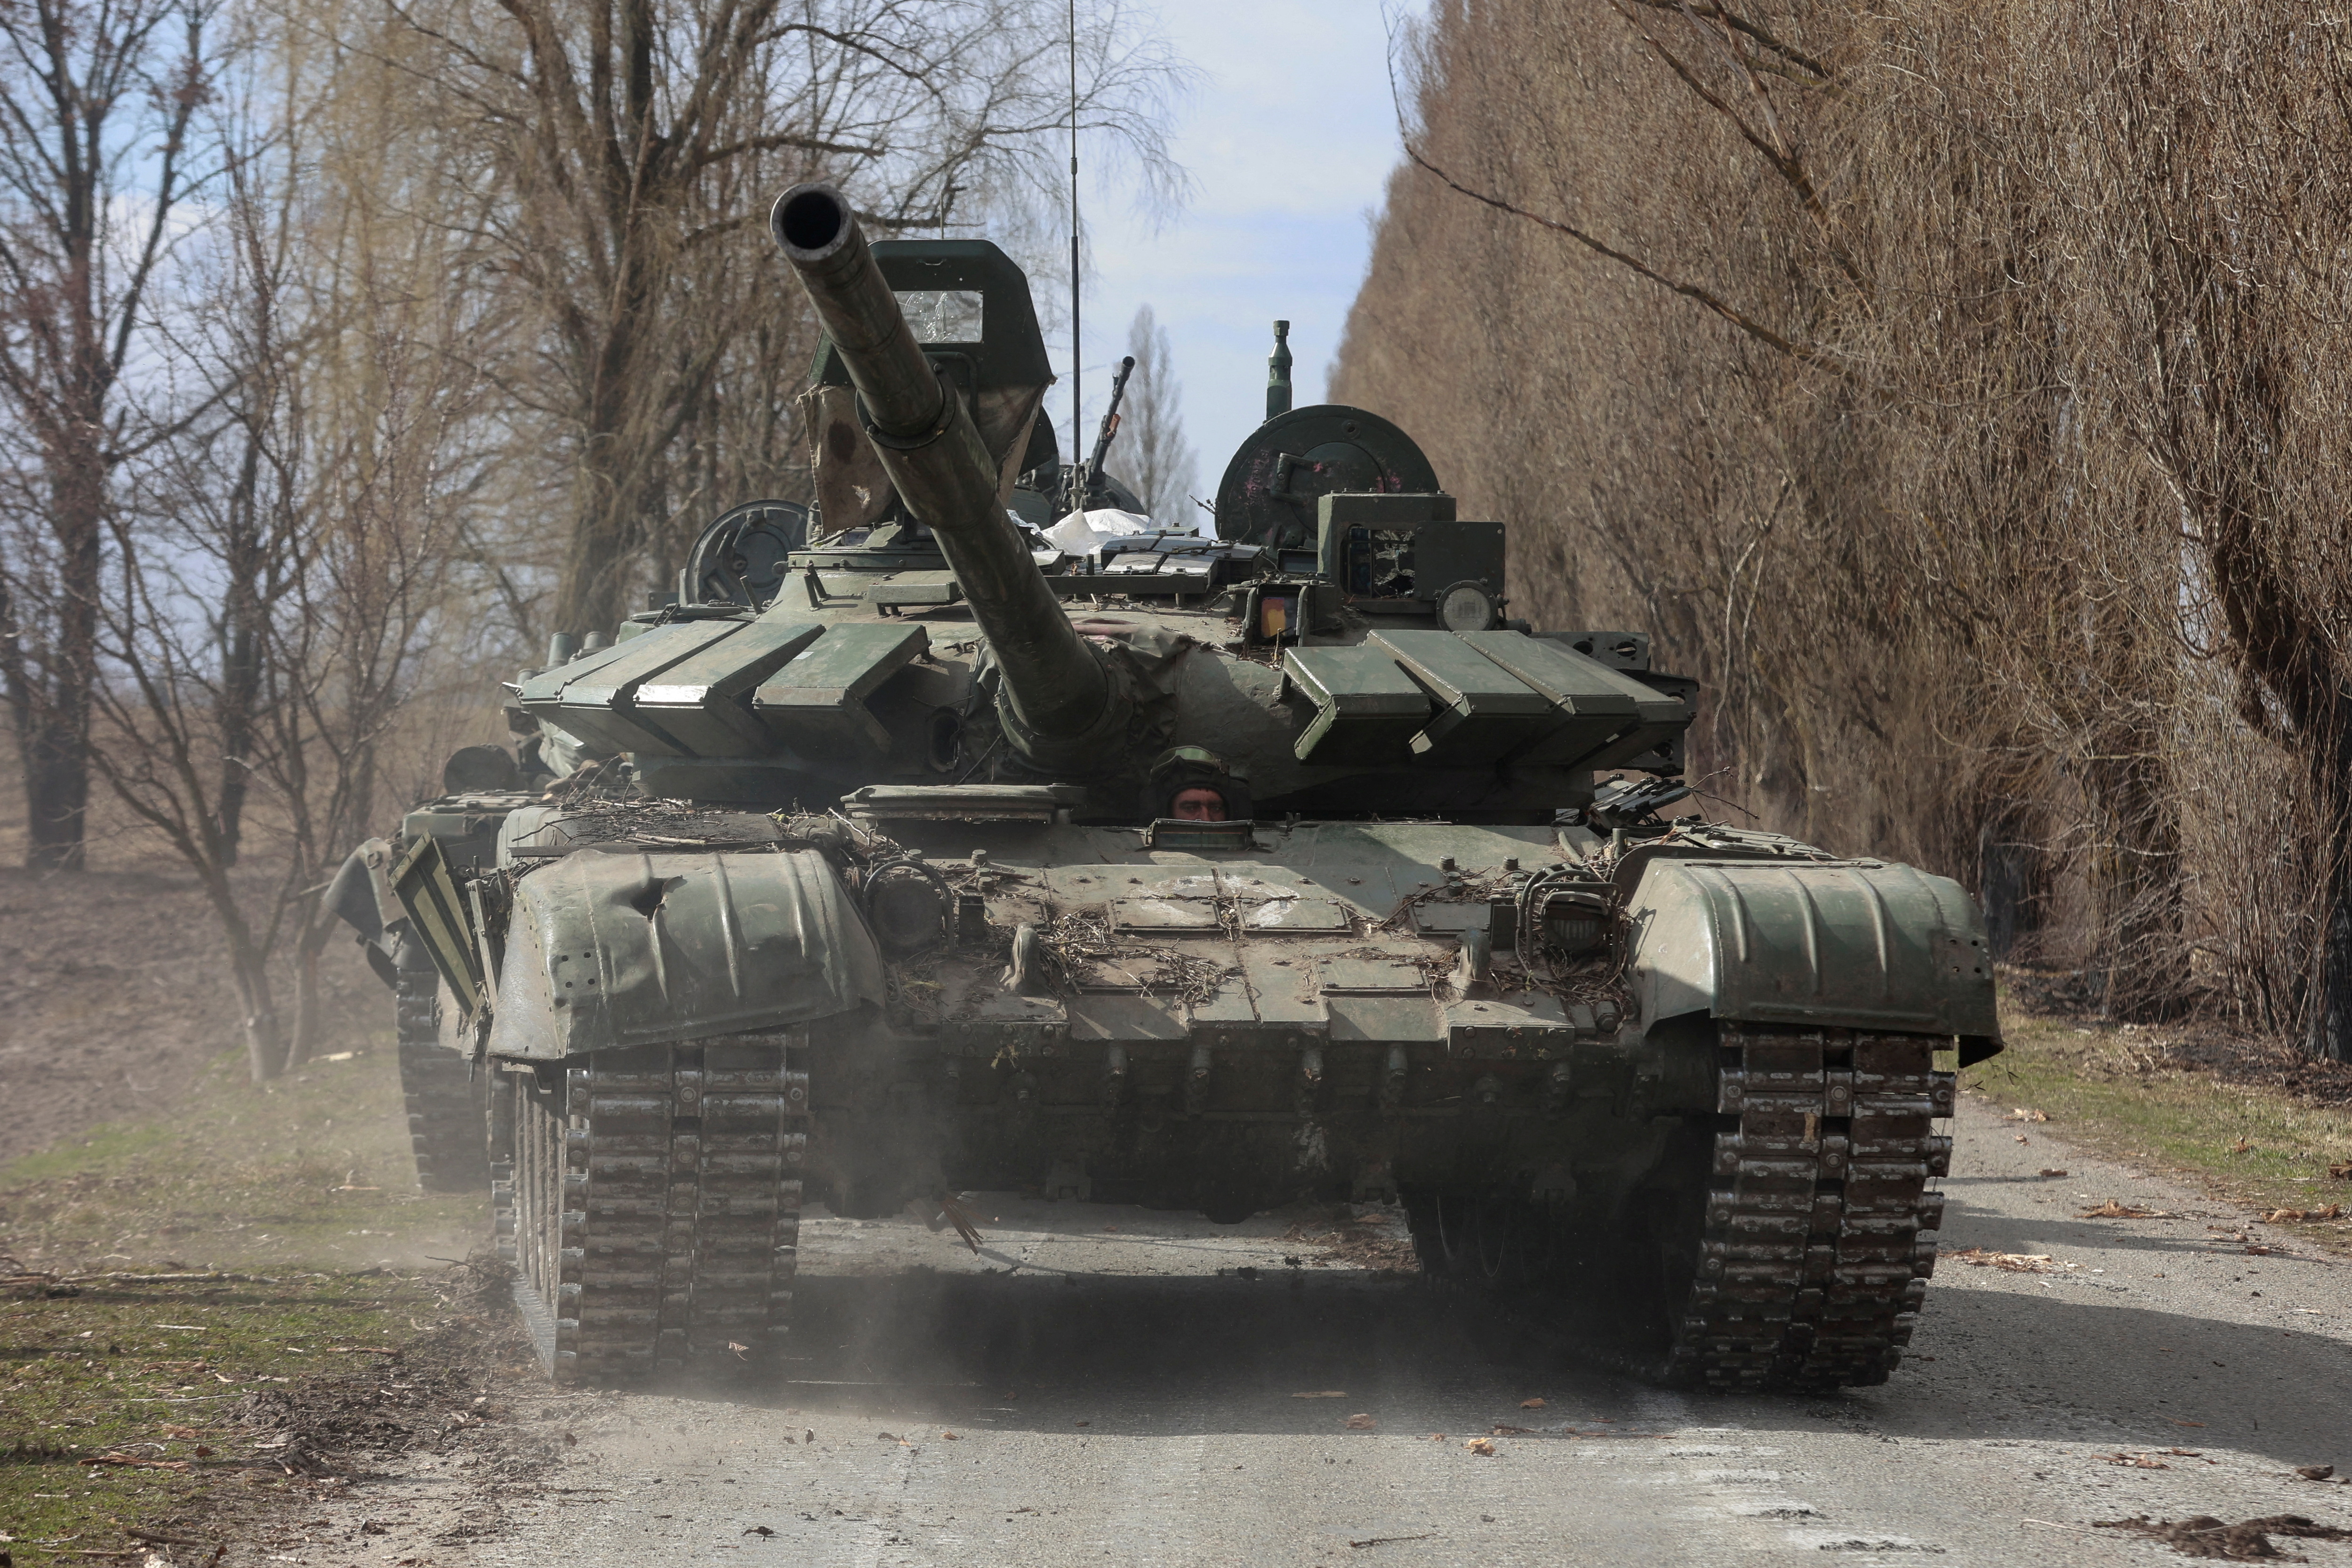 Ukrainian service member drives a captured Russian T-72 tank in Lukianivka